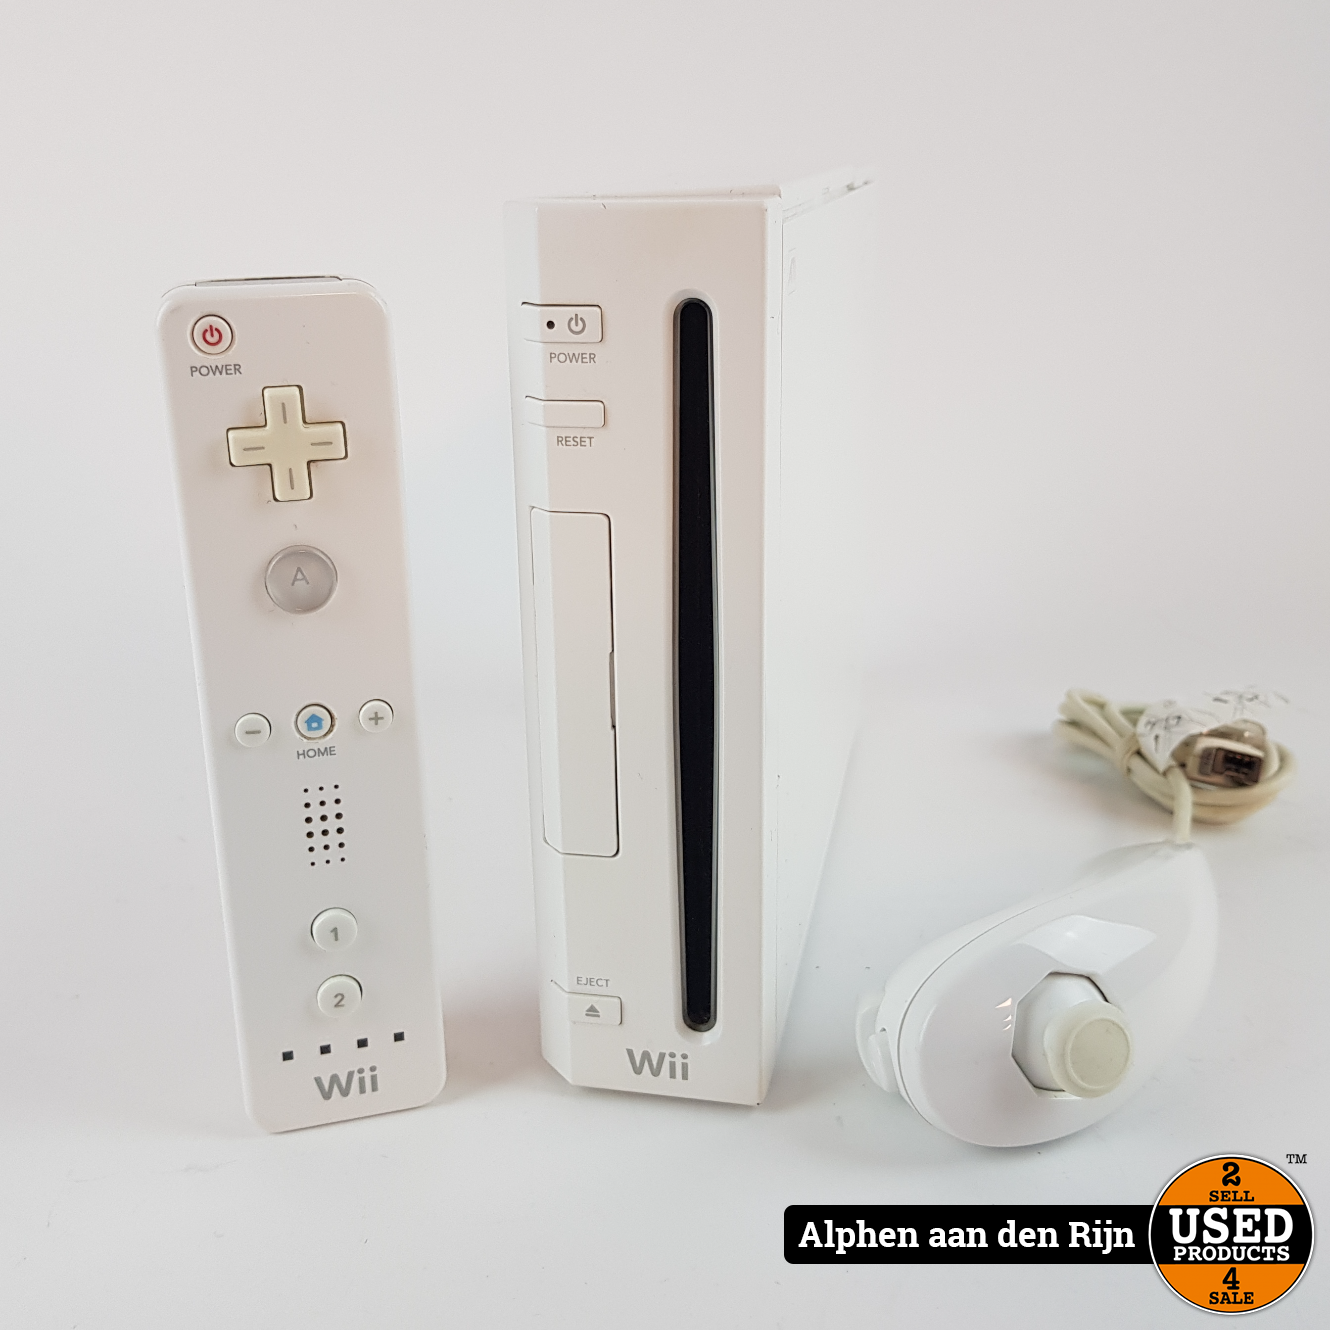 Geschiktheid Doen Bibliografie Nintendo Wii + Controller en nunchuck - Used Products Alphen aan den Rijn